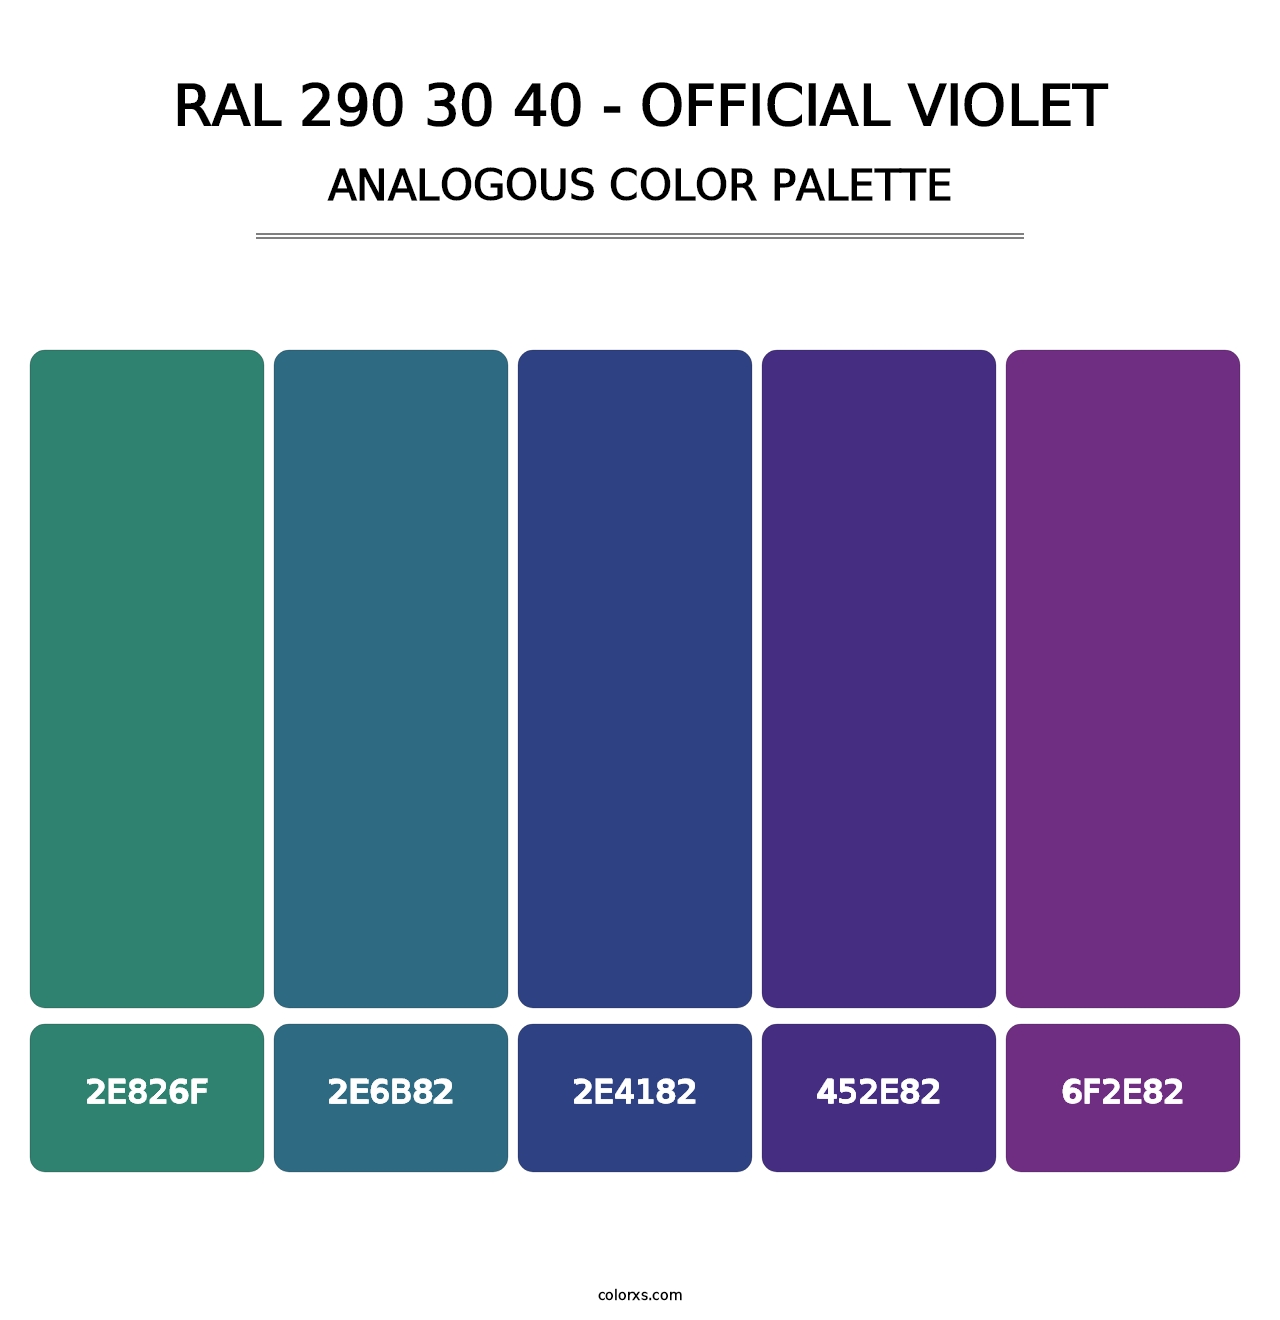 RAL 290 30 40 - Official Violet - Analogous Color Palette